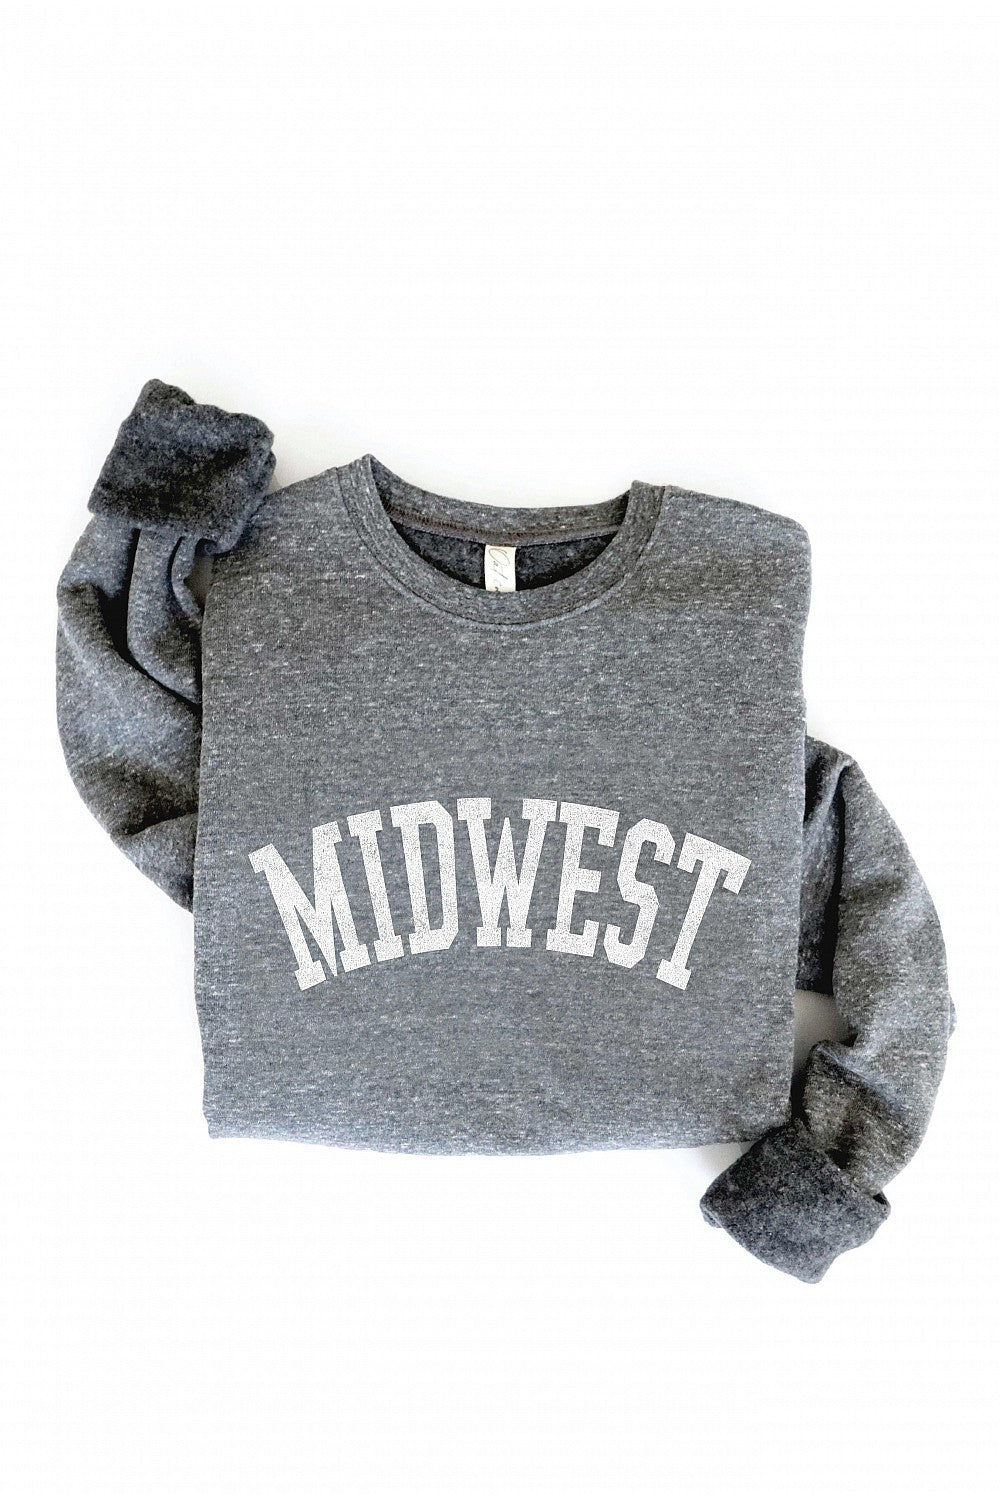 Dark Grey Midwest Sweatshirt